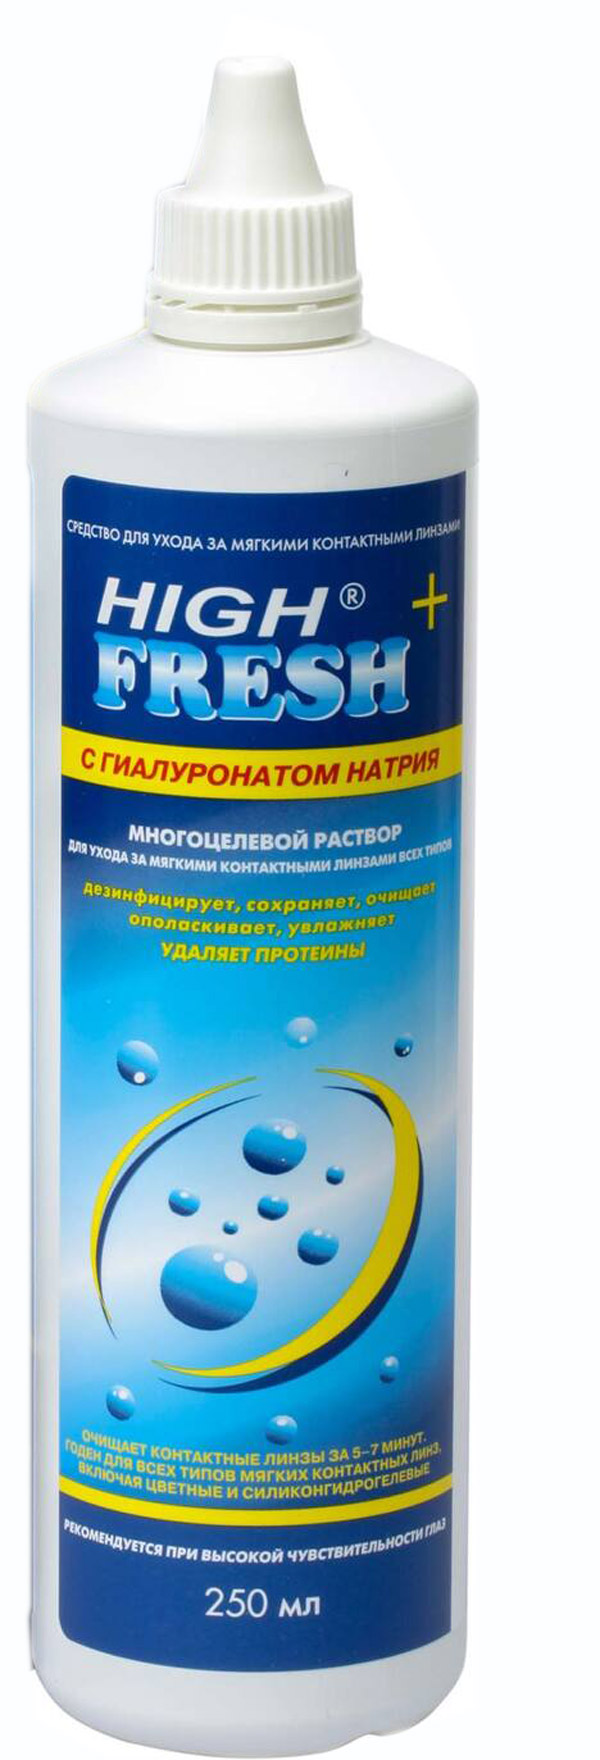 High Fresh+ с гиалуронатом натрия 250 ml (без упаковки)